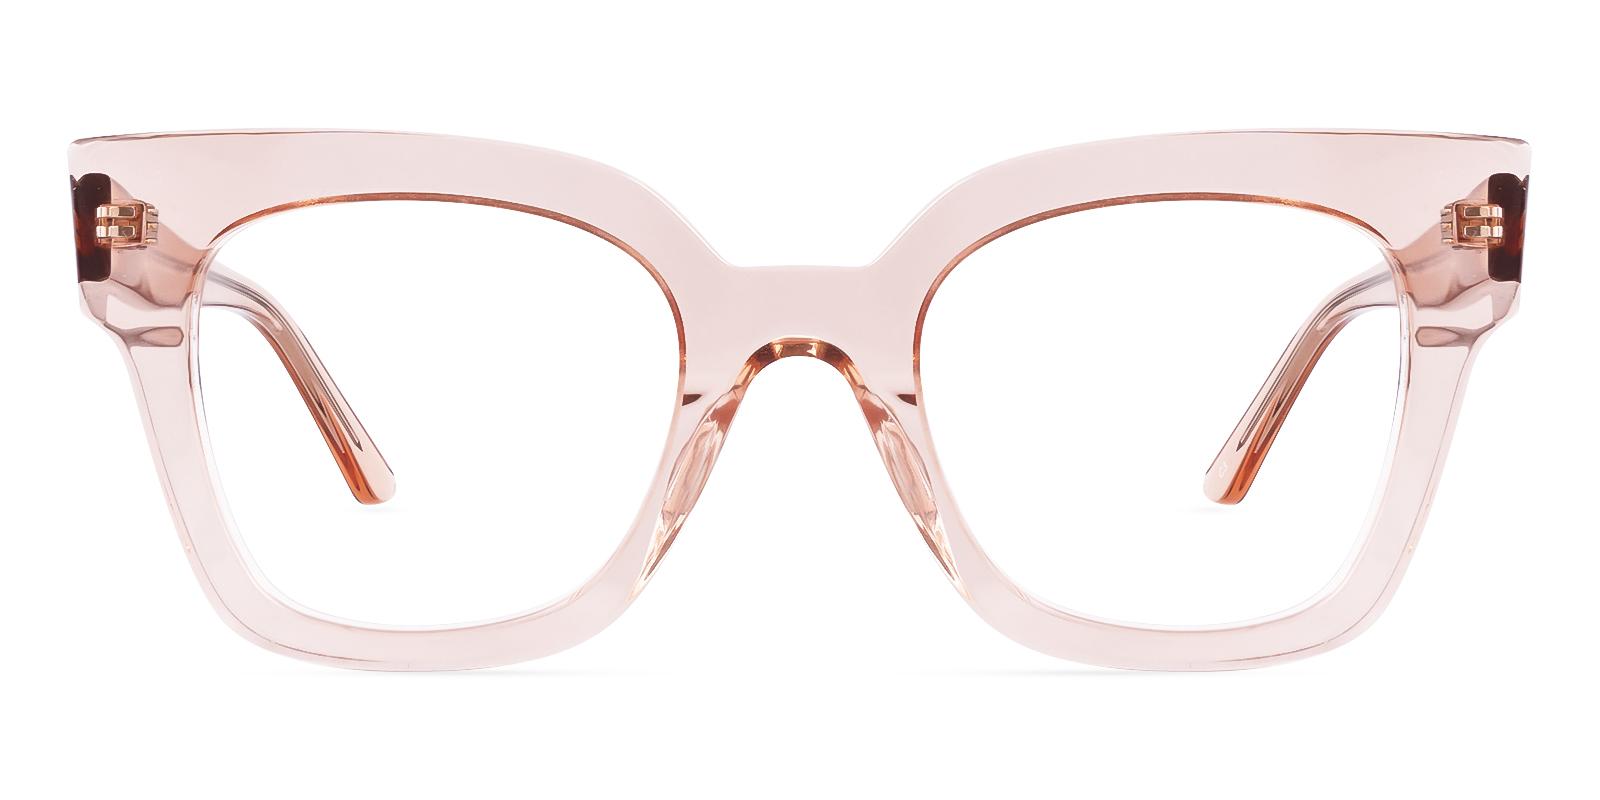 Iganeity Orange Acetate Eyeglasses , UniversalBridgeFit Frames from ABBE Glasses